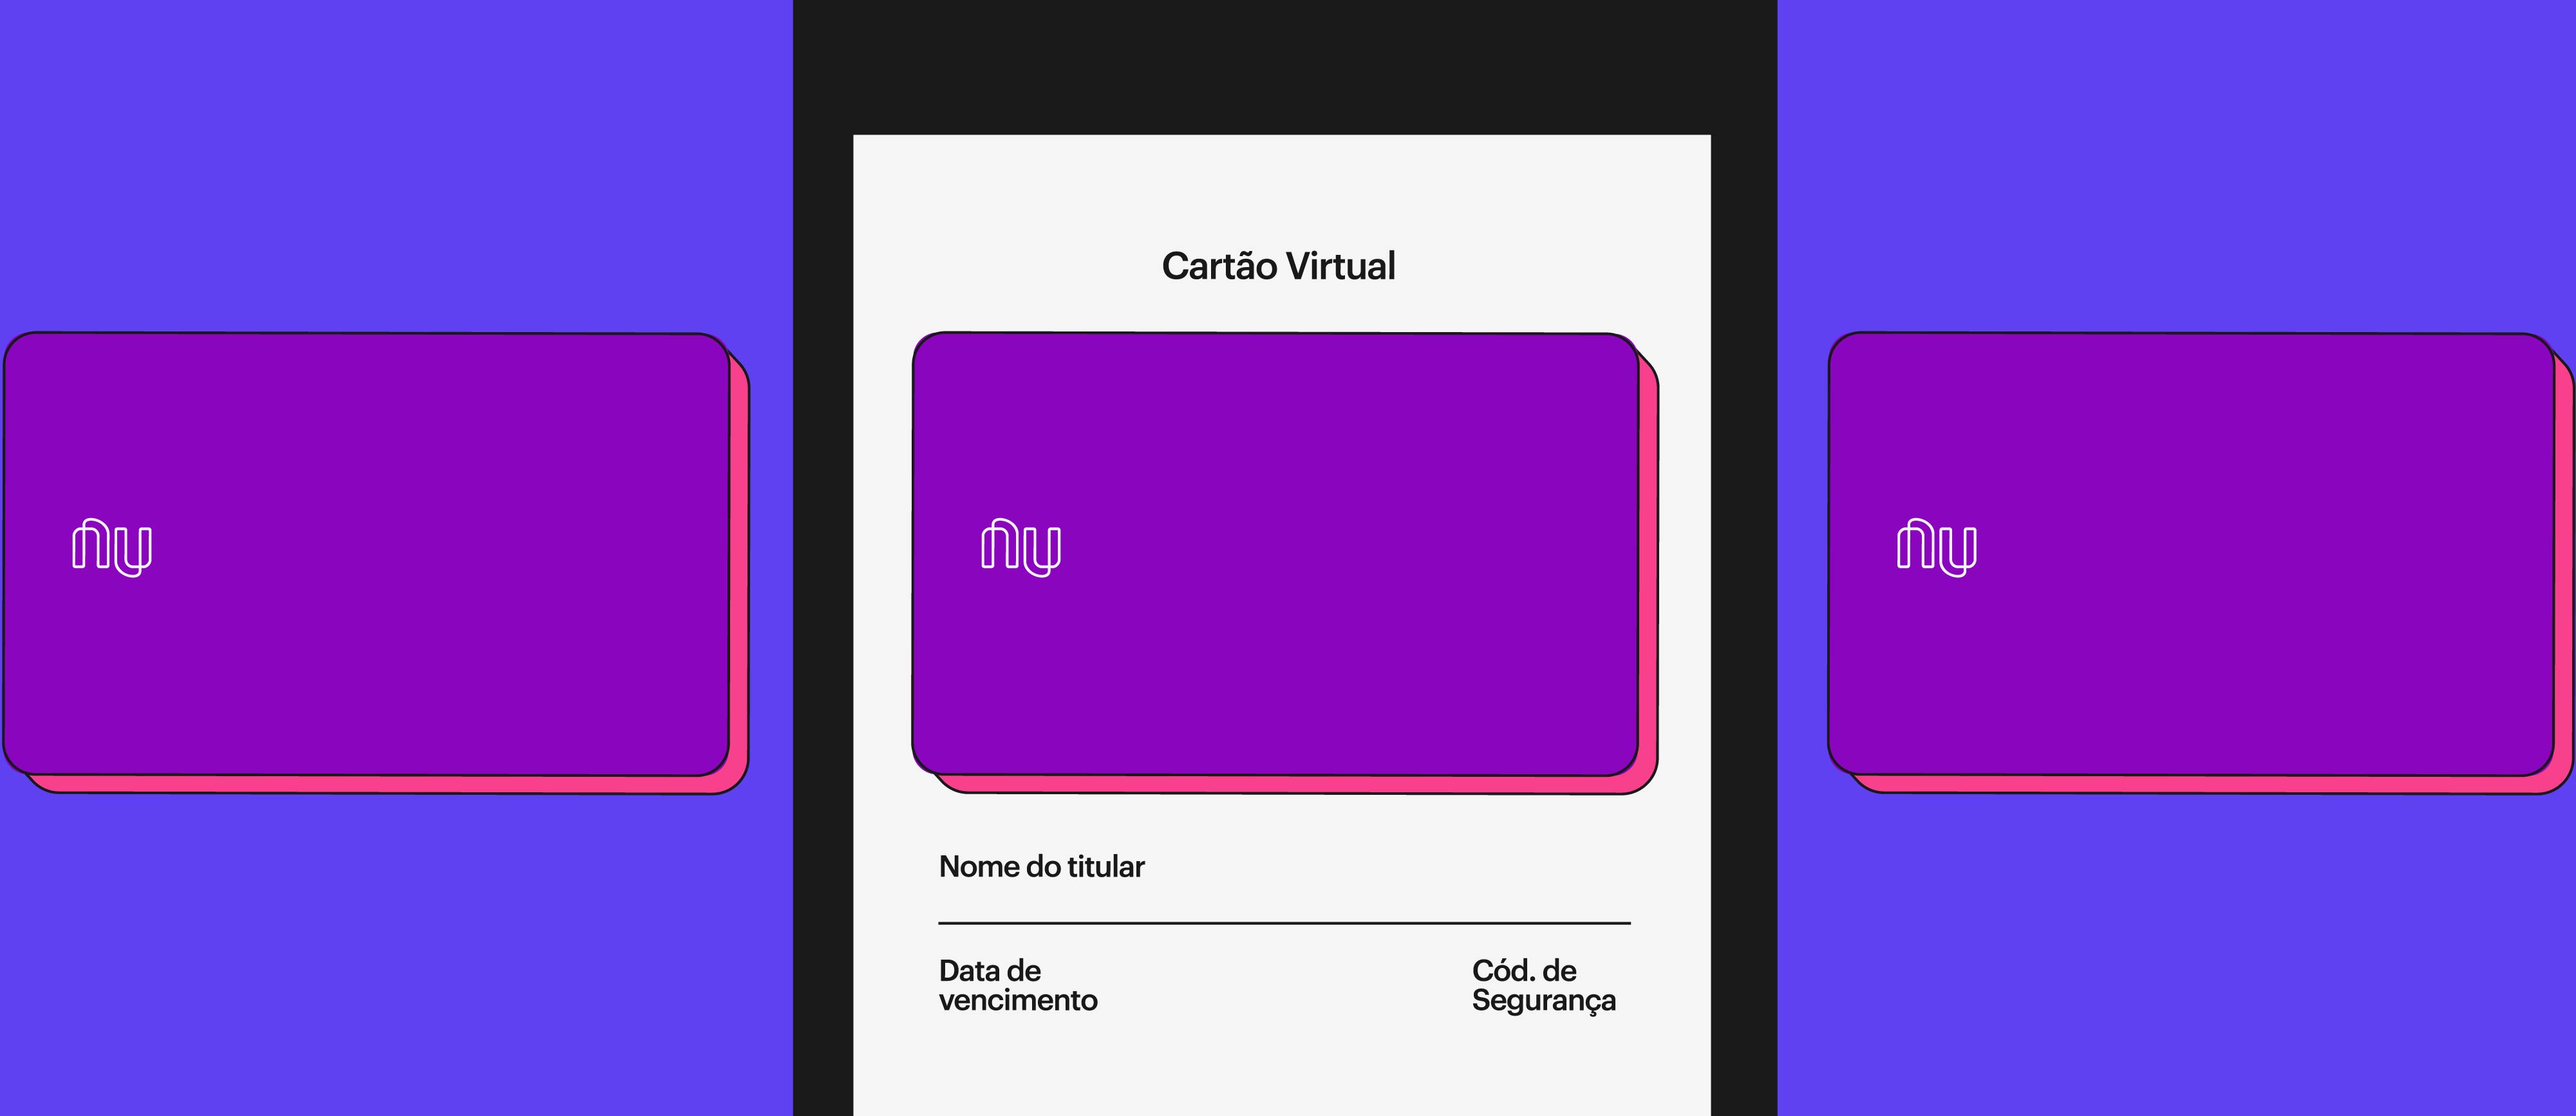 Imagem de uma tela de celular escrito Cartão Virtual e com a imagem de um cartão Nubank. Outros dois cartões aparecem fora do celular